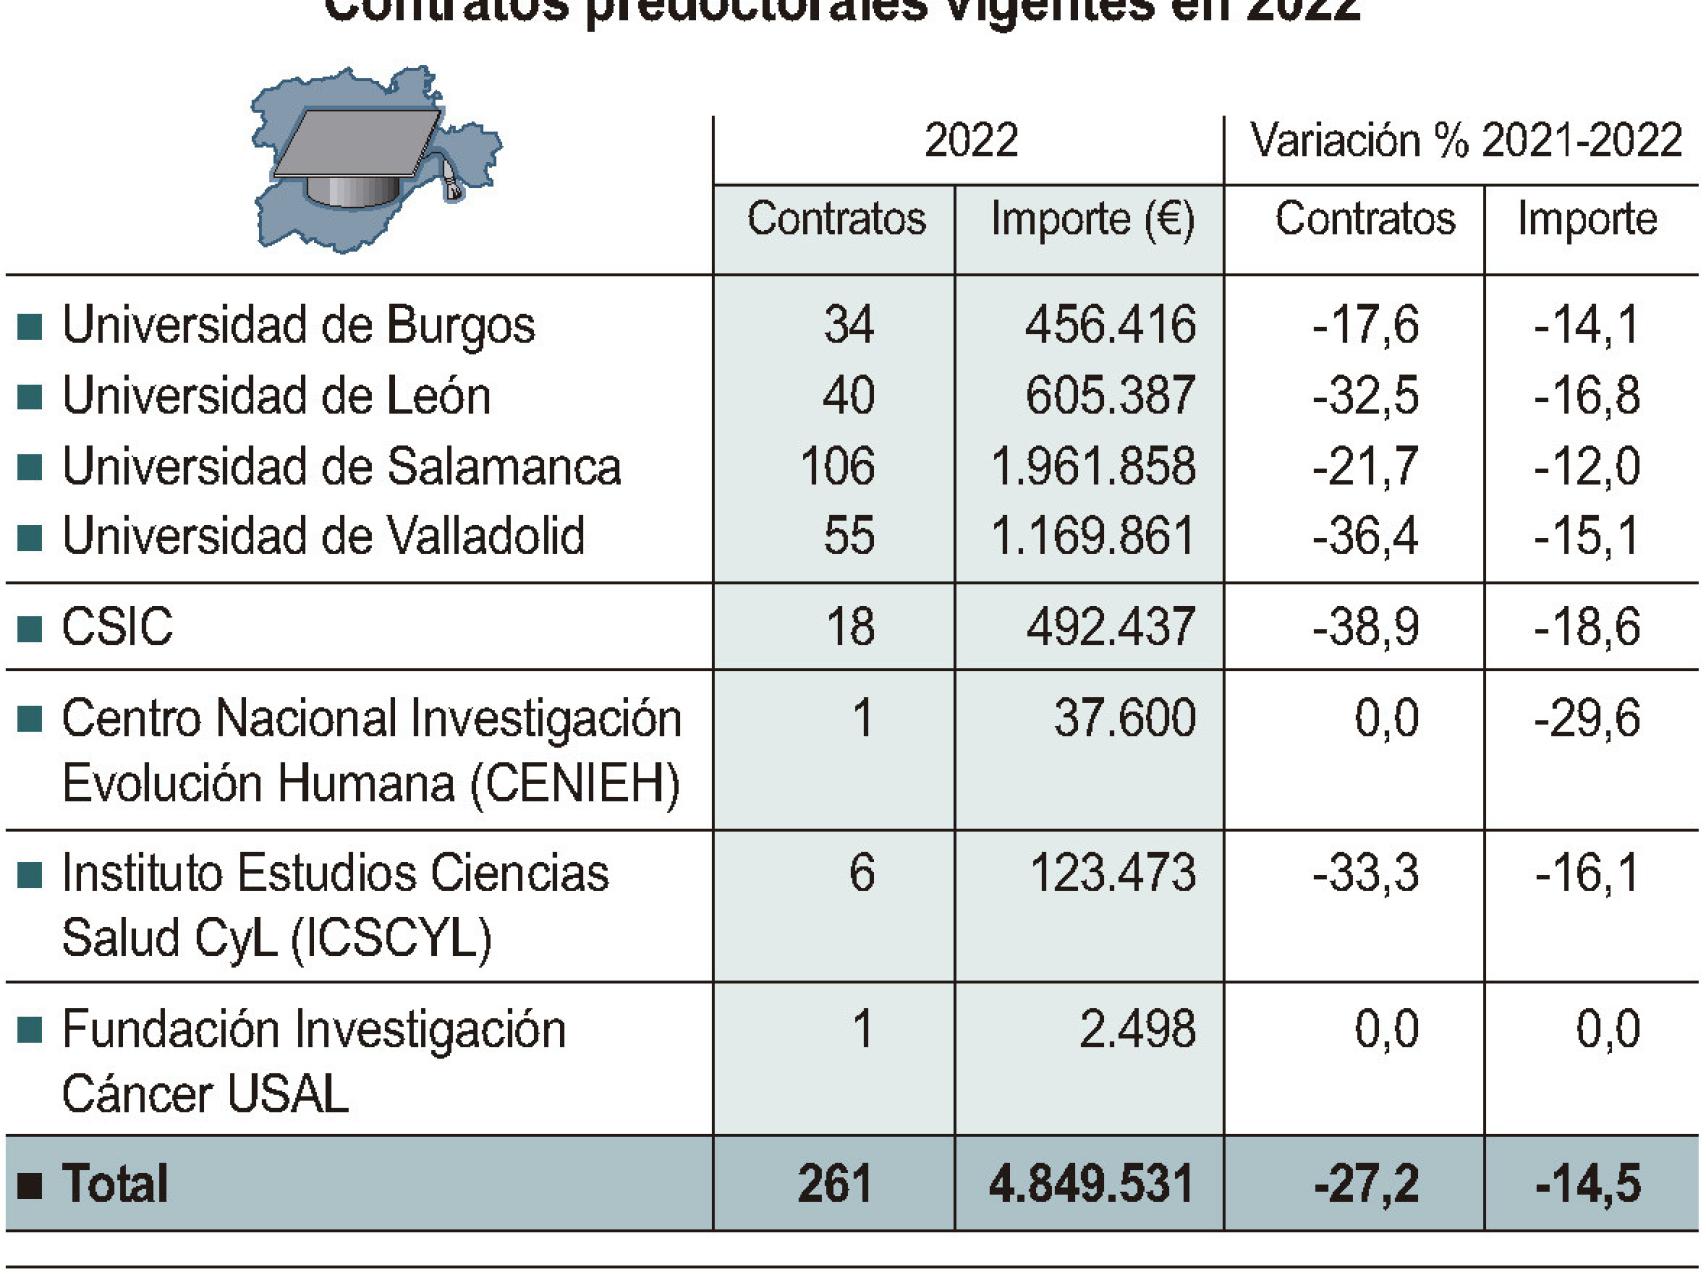 Contratos predoctorales en Castilla y León